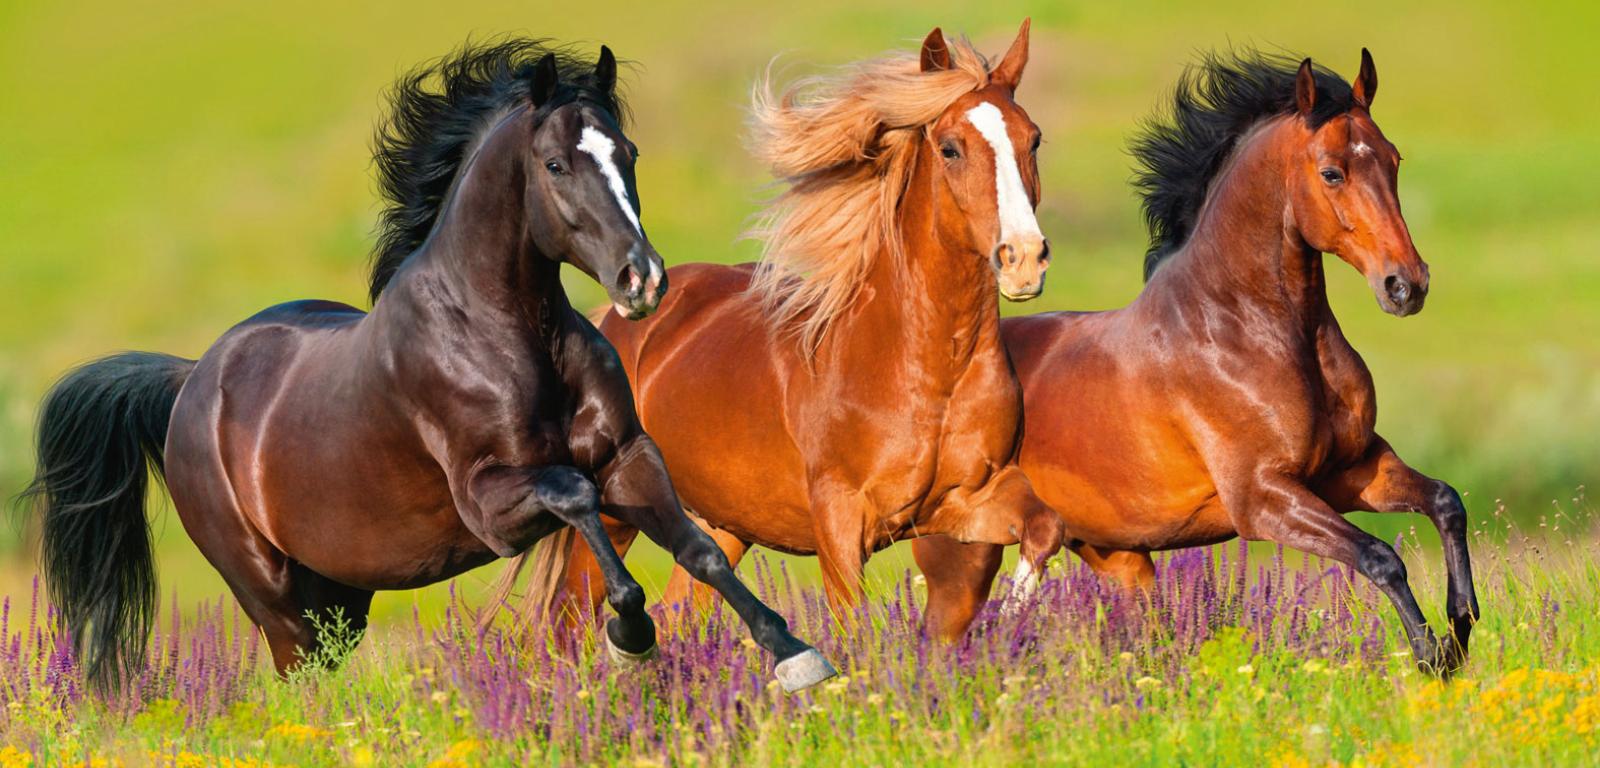 Galop jest jednym z czerech rodzajów chodu, w czasie którego koń osiąga prędkość ok. 35 km/h.